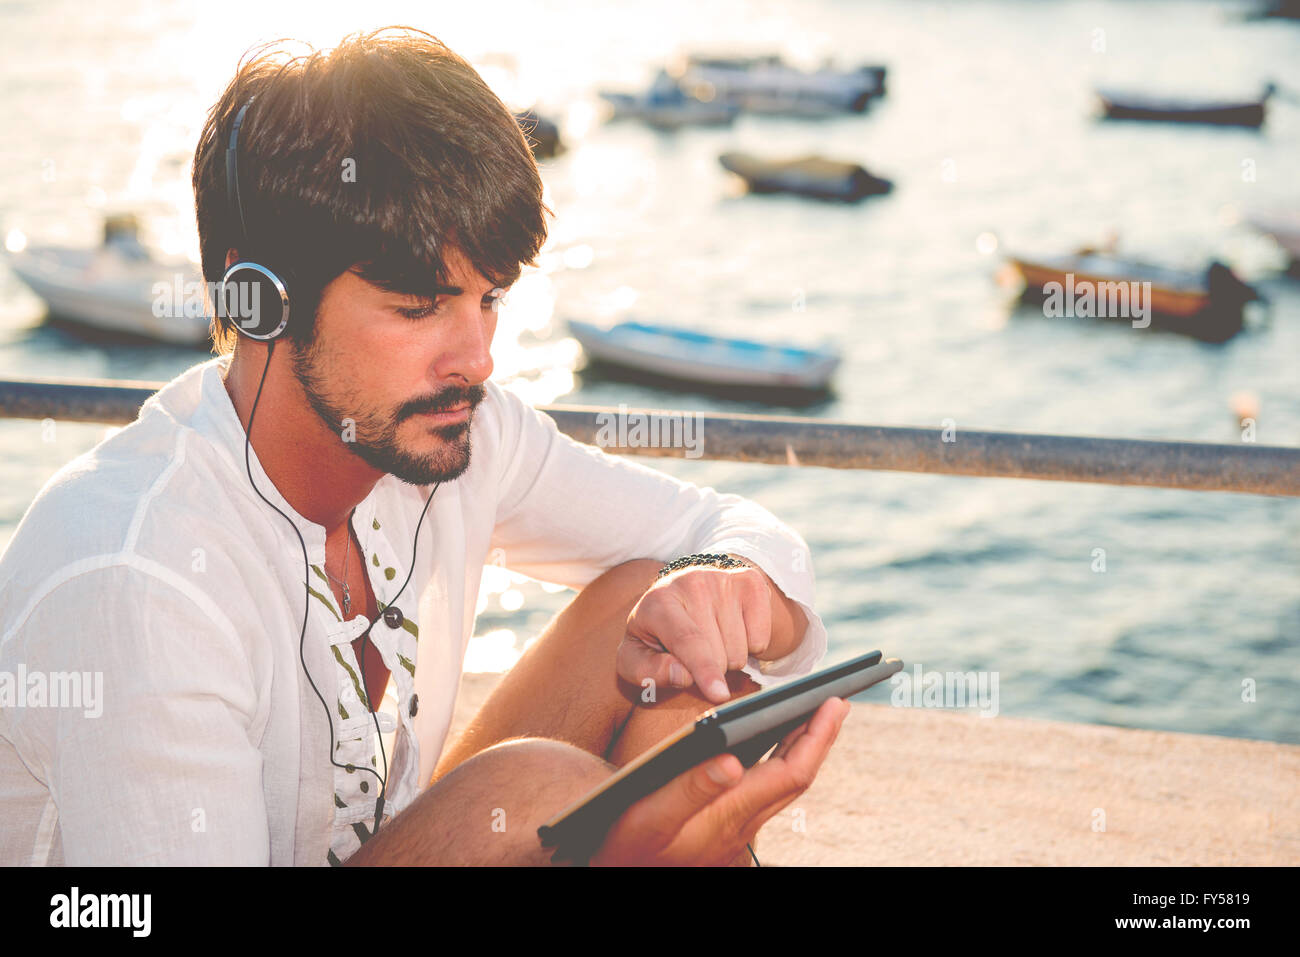 Guy ascoltando musica con le cuffie dalla compressa in una destinazione di vacanze nei pressi di barche Foto Stock